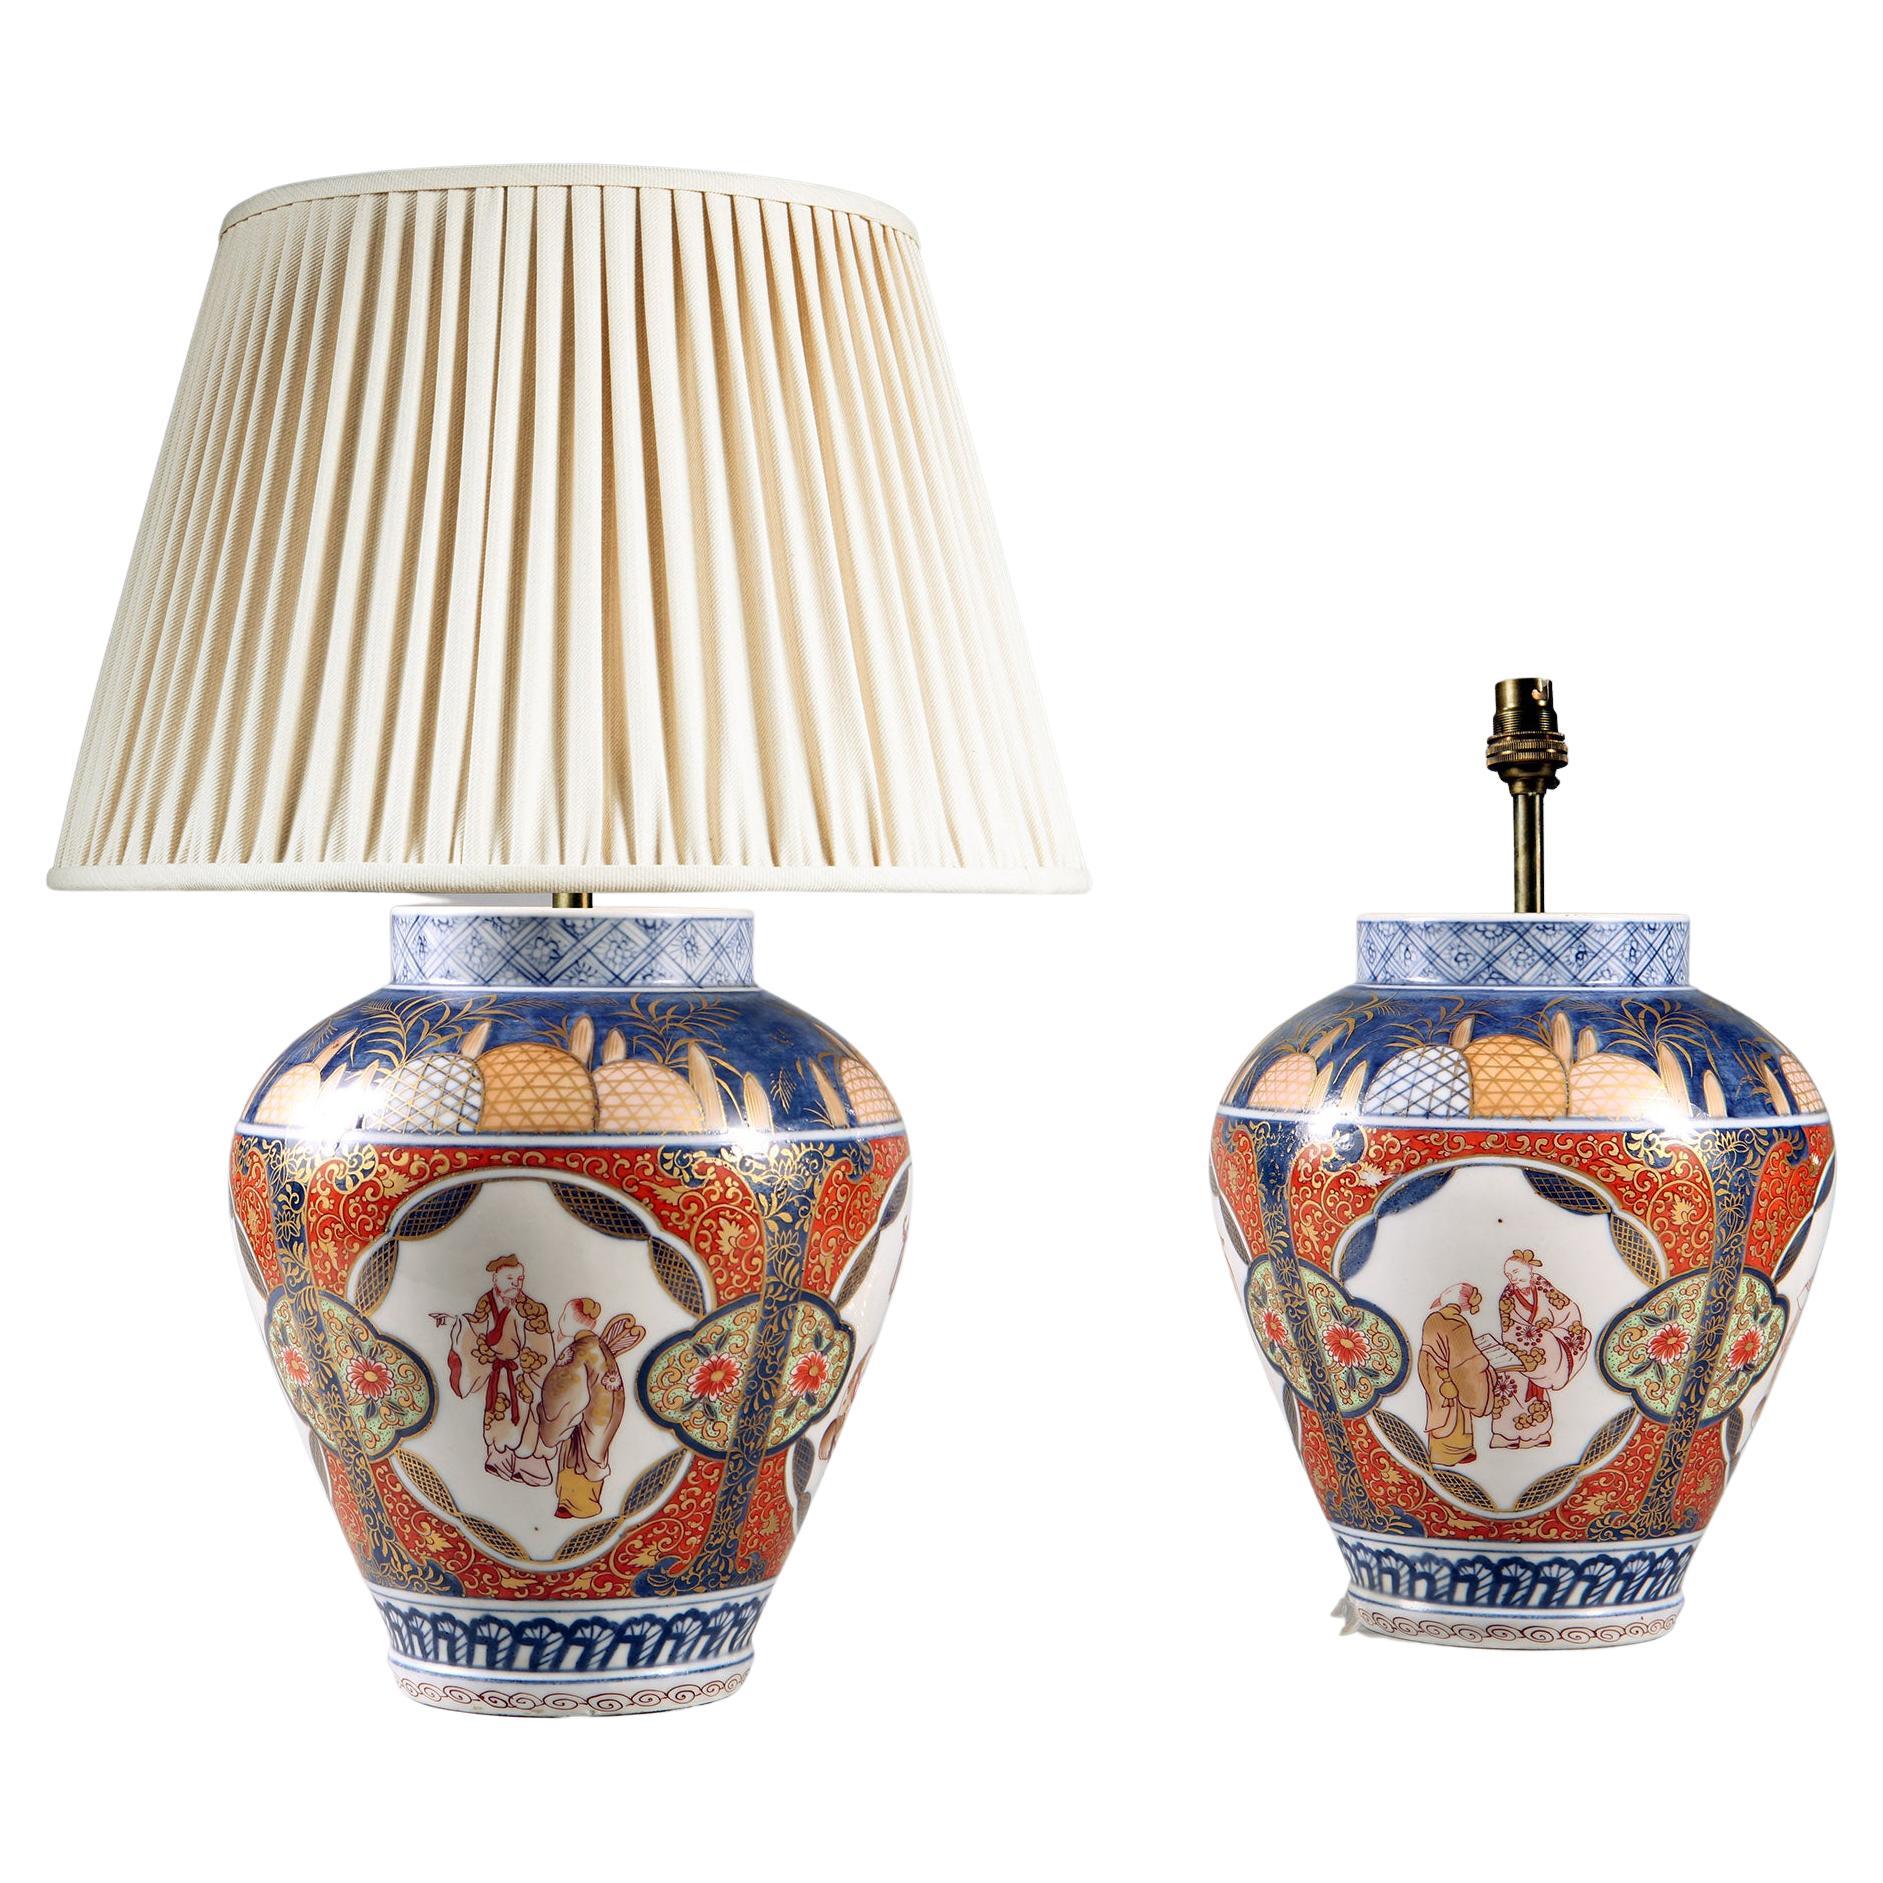 Pair of Porcelain Imari Pattern Table Lamps